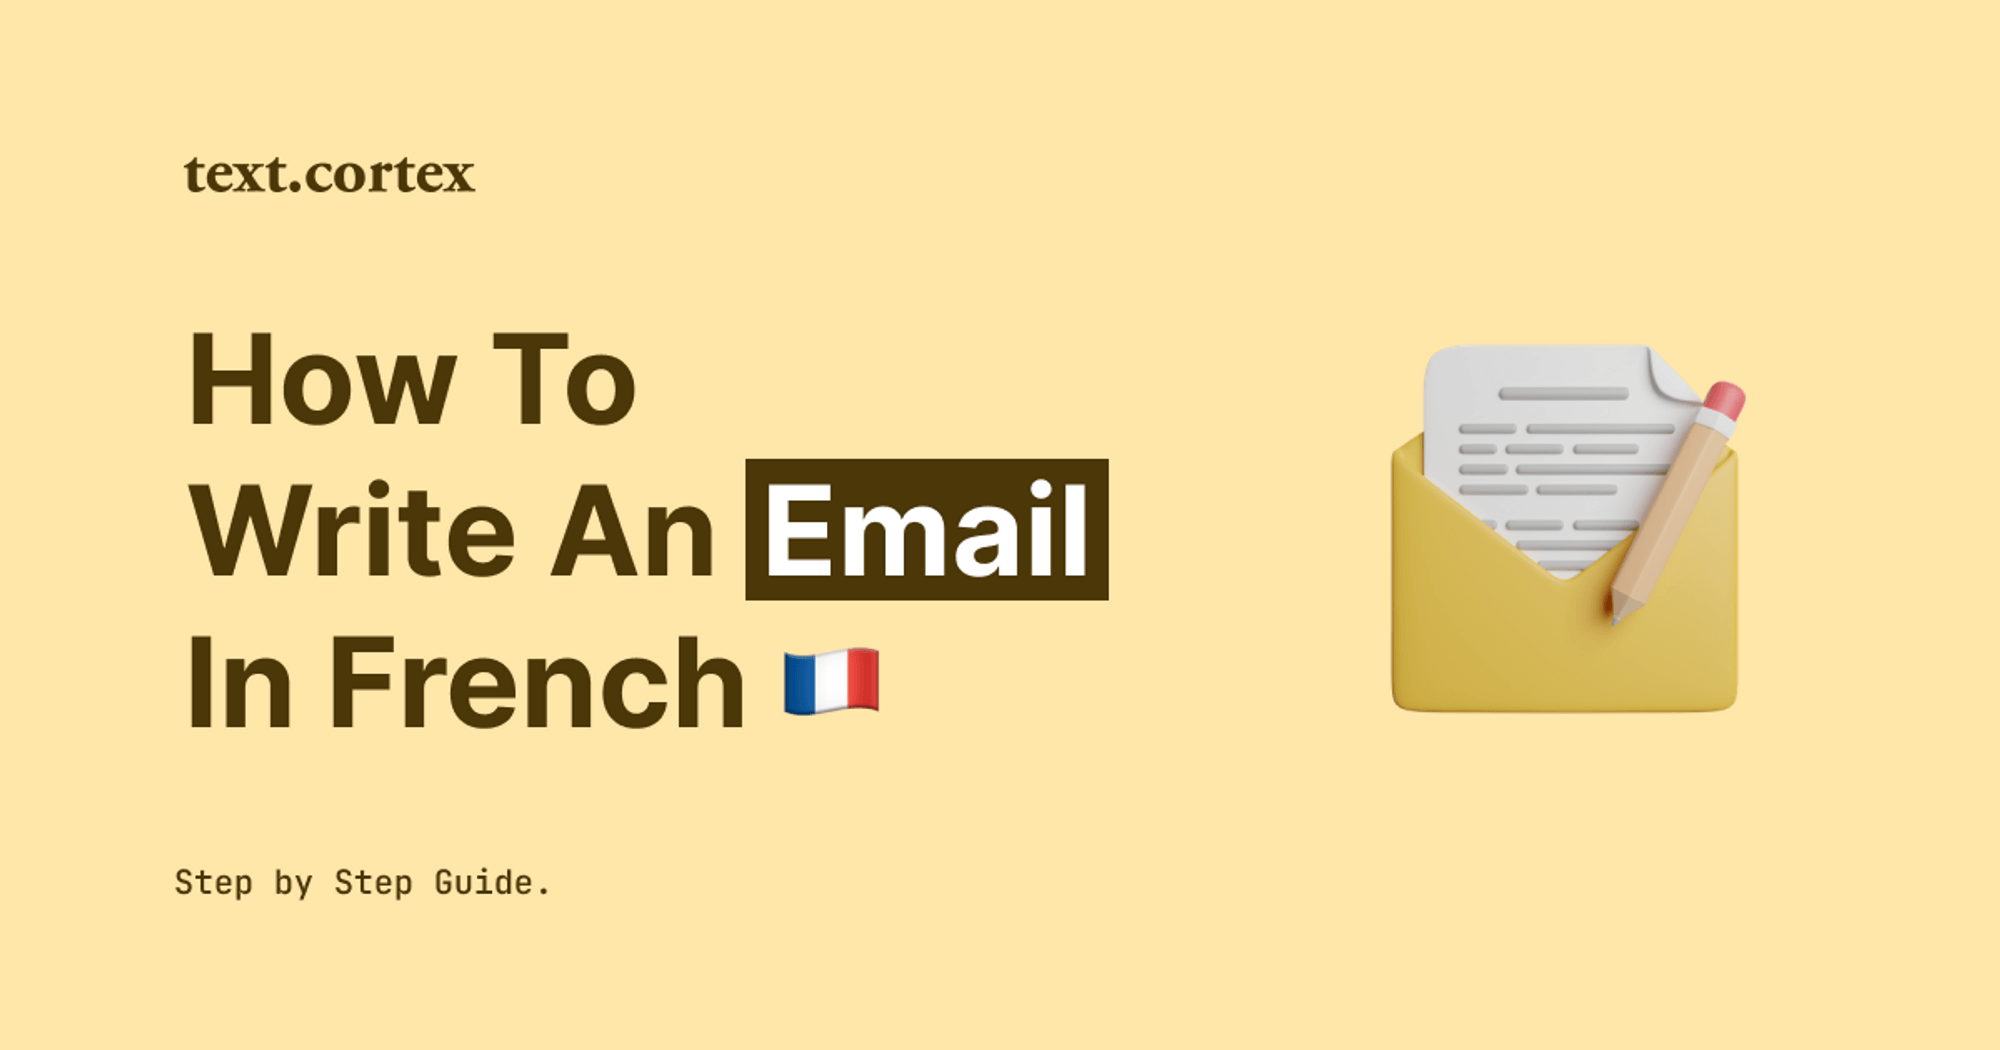 프랑스어로 이메일을 작성하는 방법 - 단계별 가이드